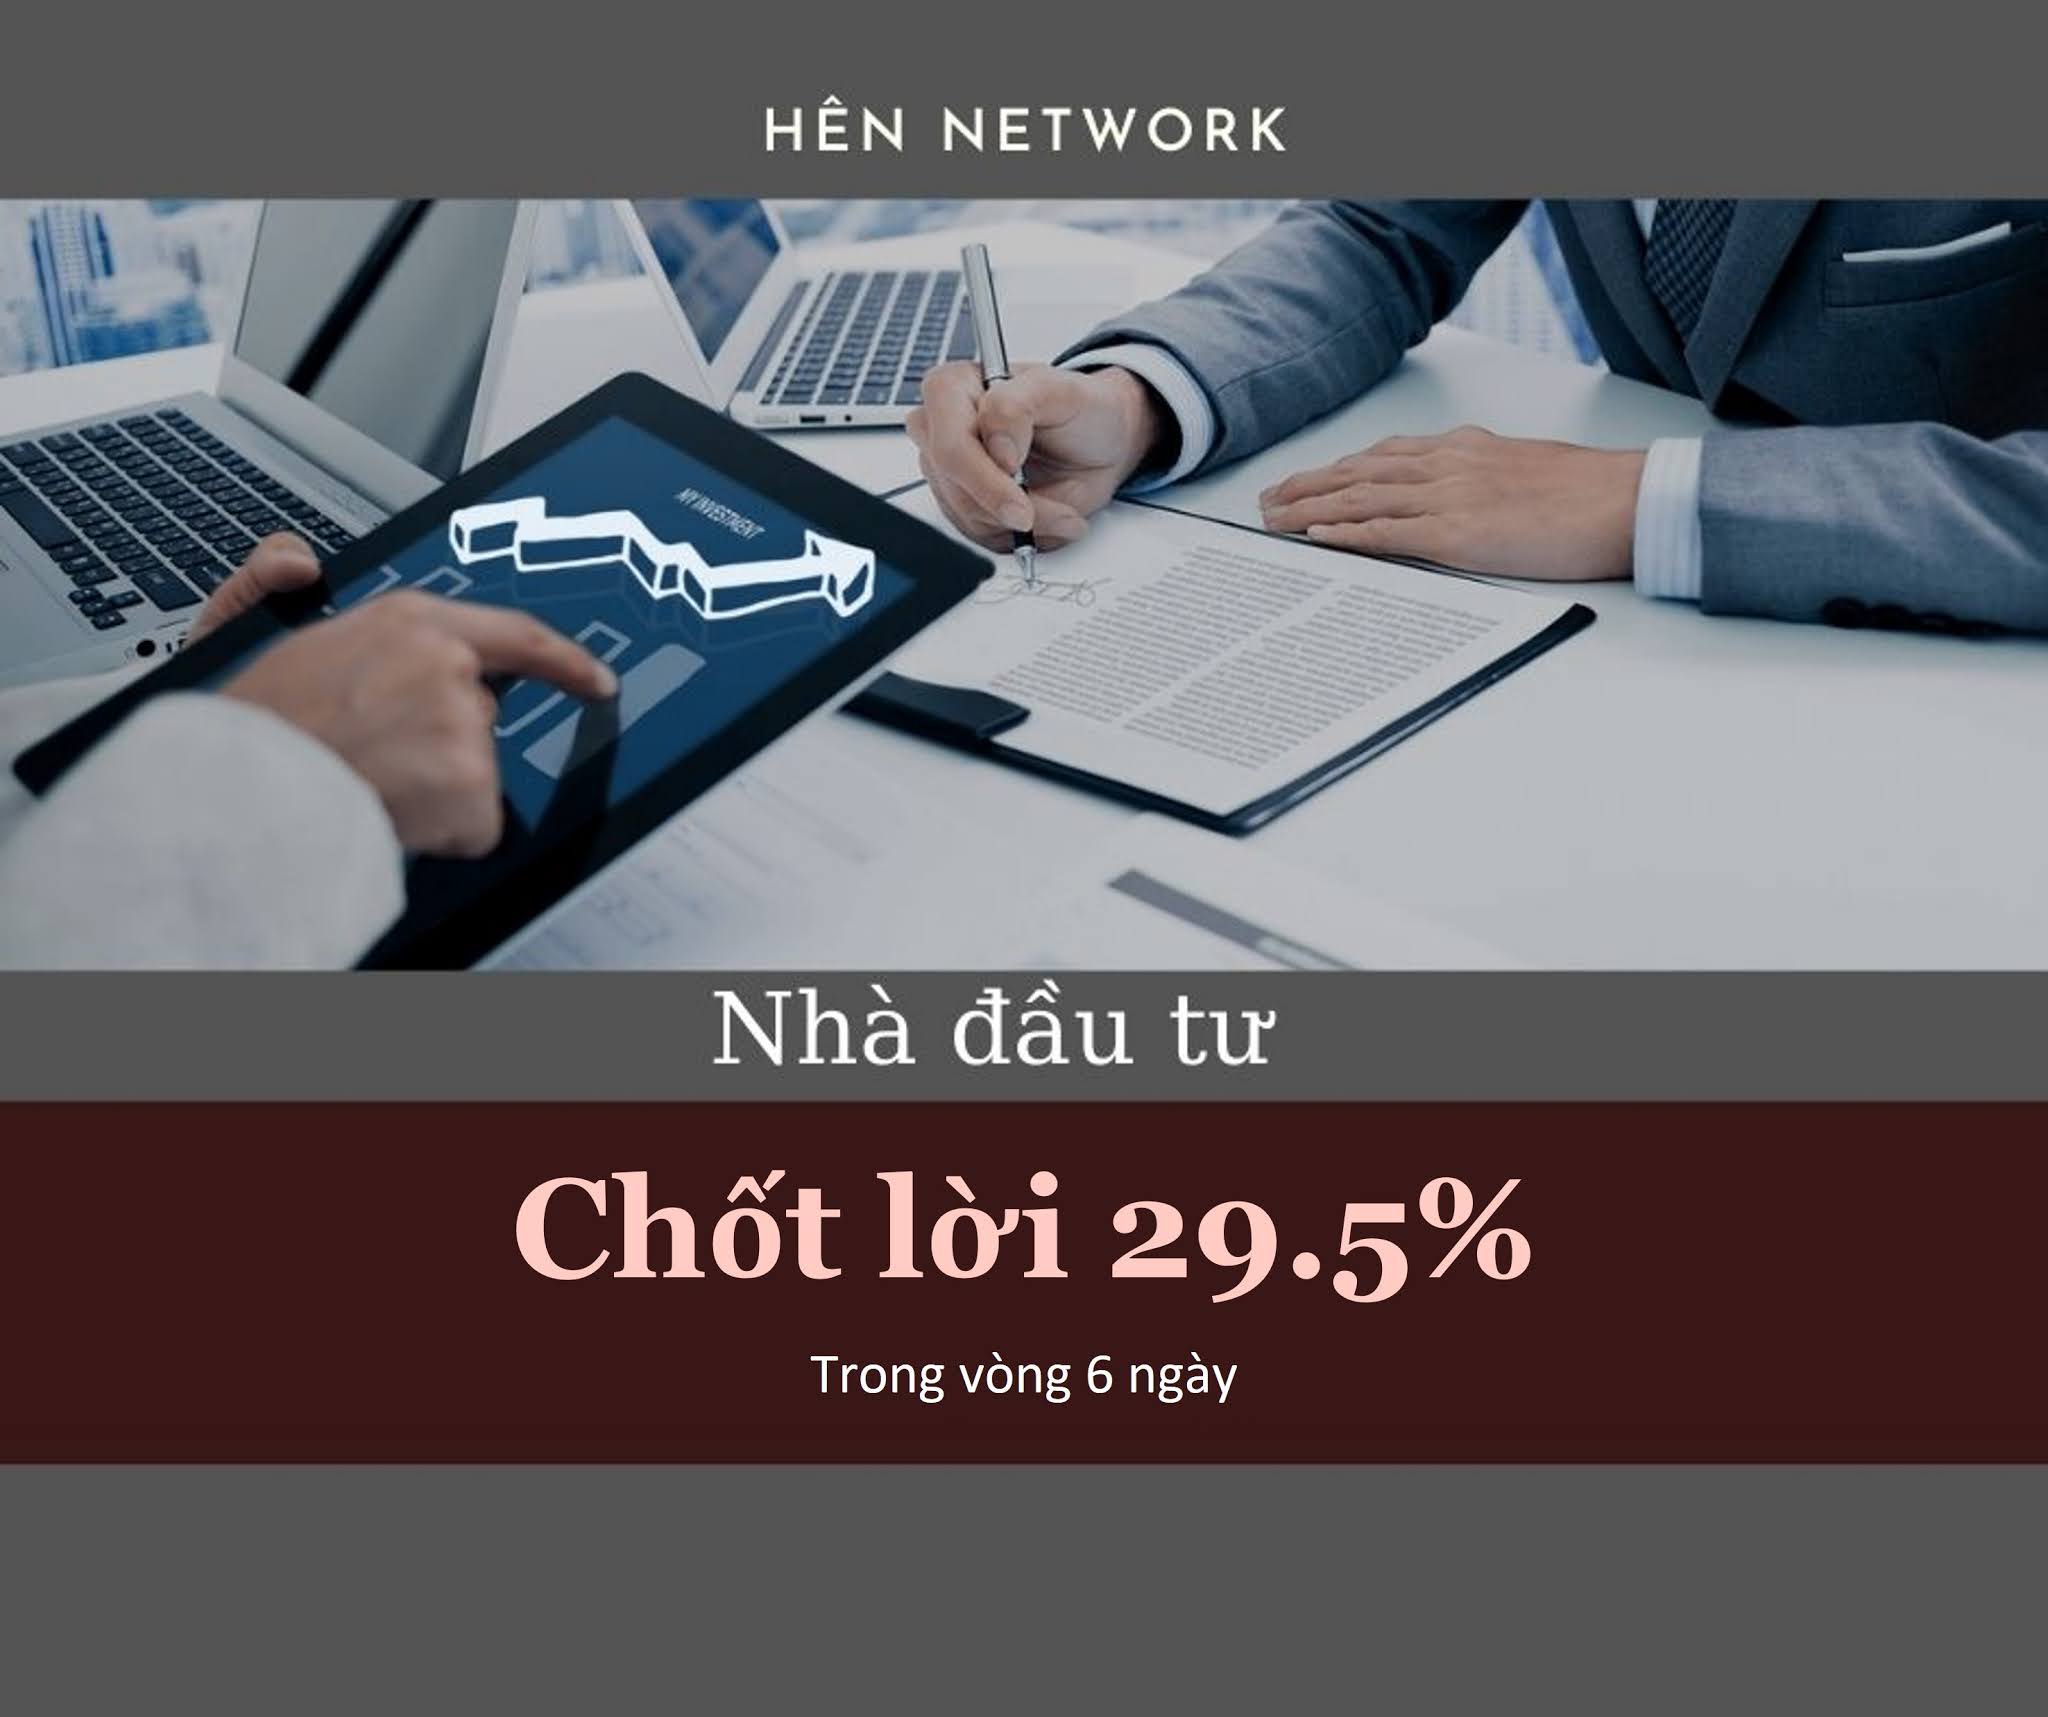 Nhà đầu tư Hên Network chốt lời 29.5% chỉ trong 6 ngày